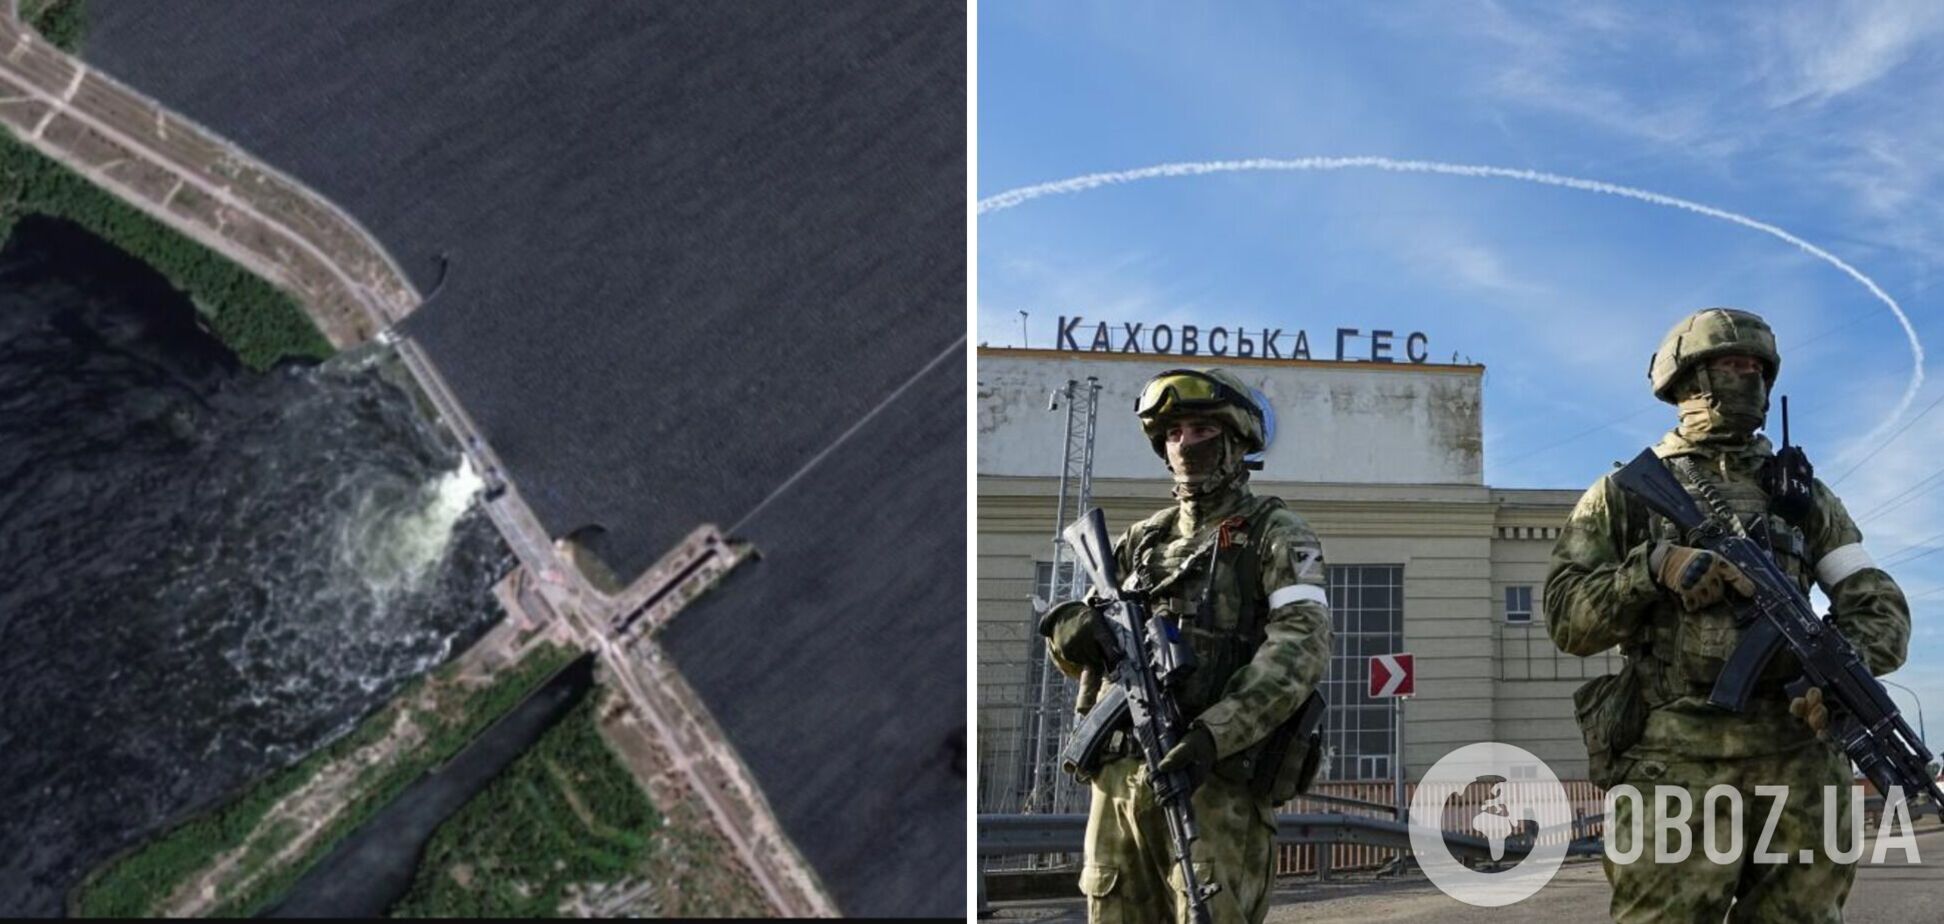 'Поняли, что влипли': как российские пропагандисты 'переобувались' с подрывом Каховской ГЭС и почему им не поверила даже часть россиян